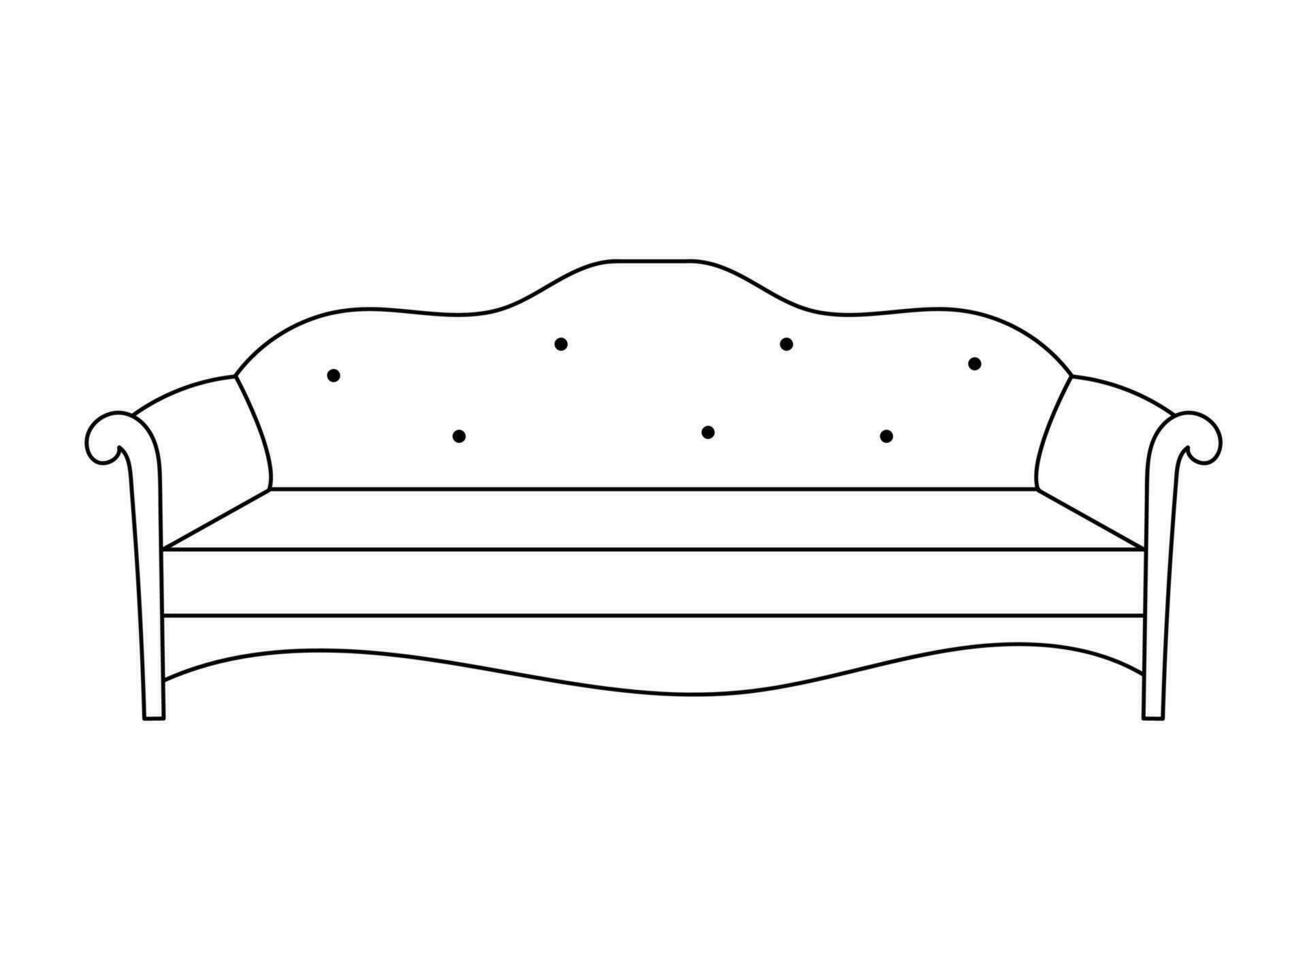 soffa linje ikoner. möbel design. samling av soffa illustration. modern möbel uppsättning isolerat på vit bakgrund. vektor